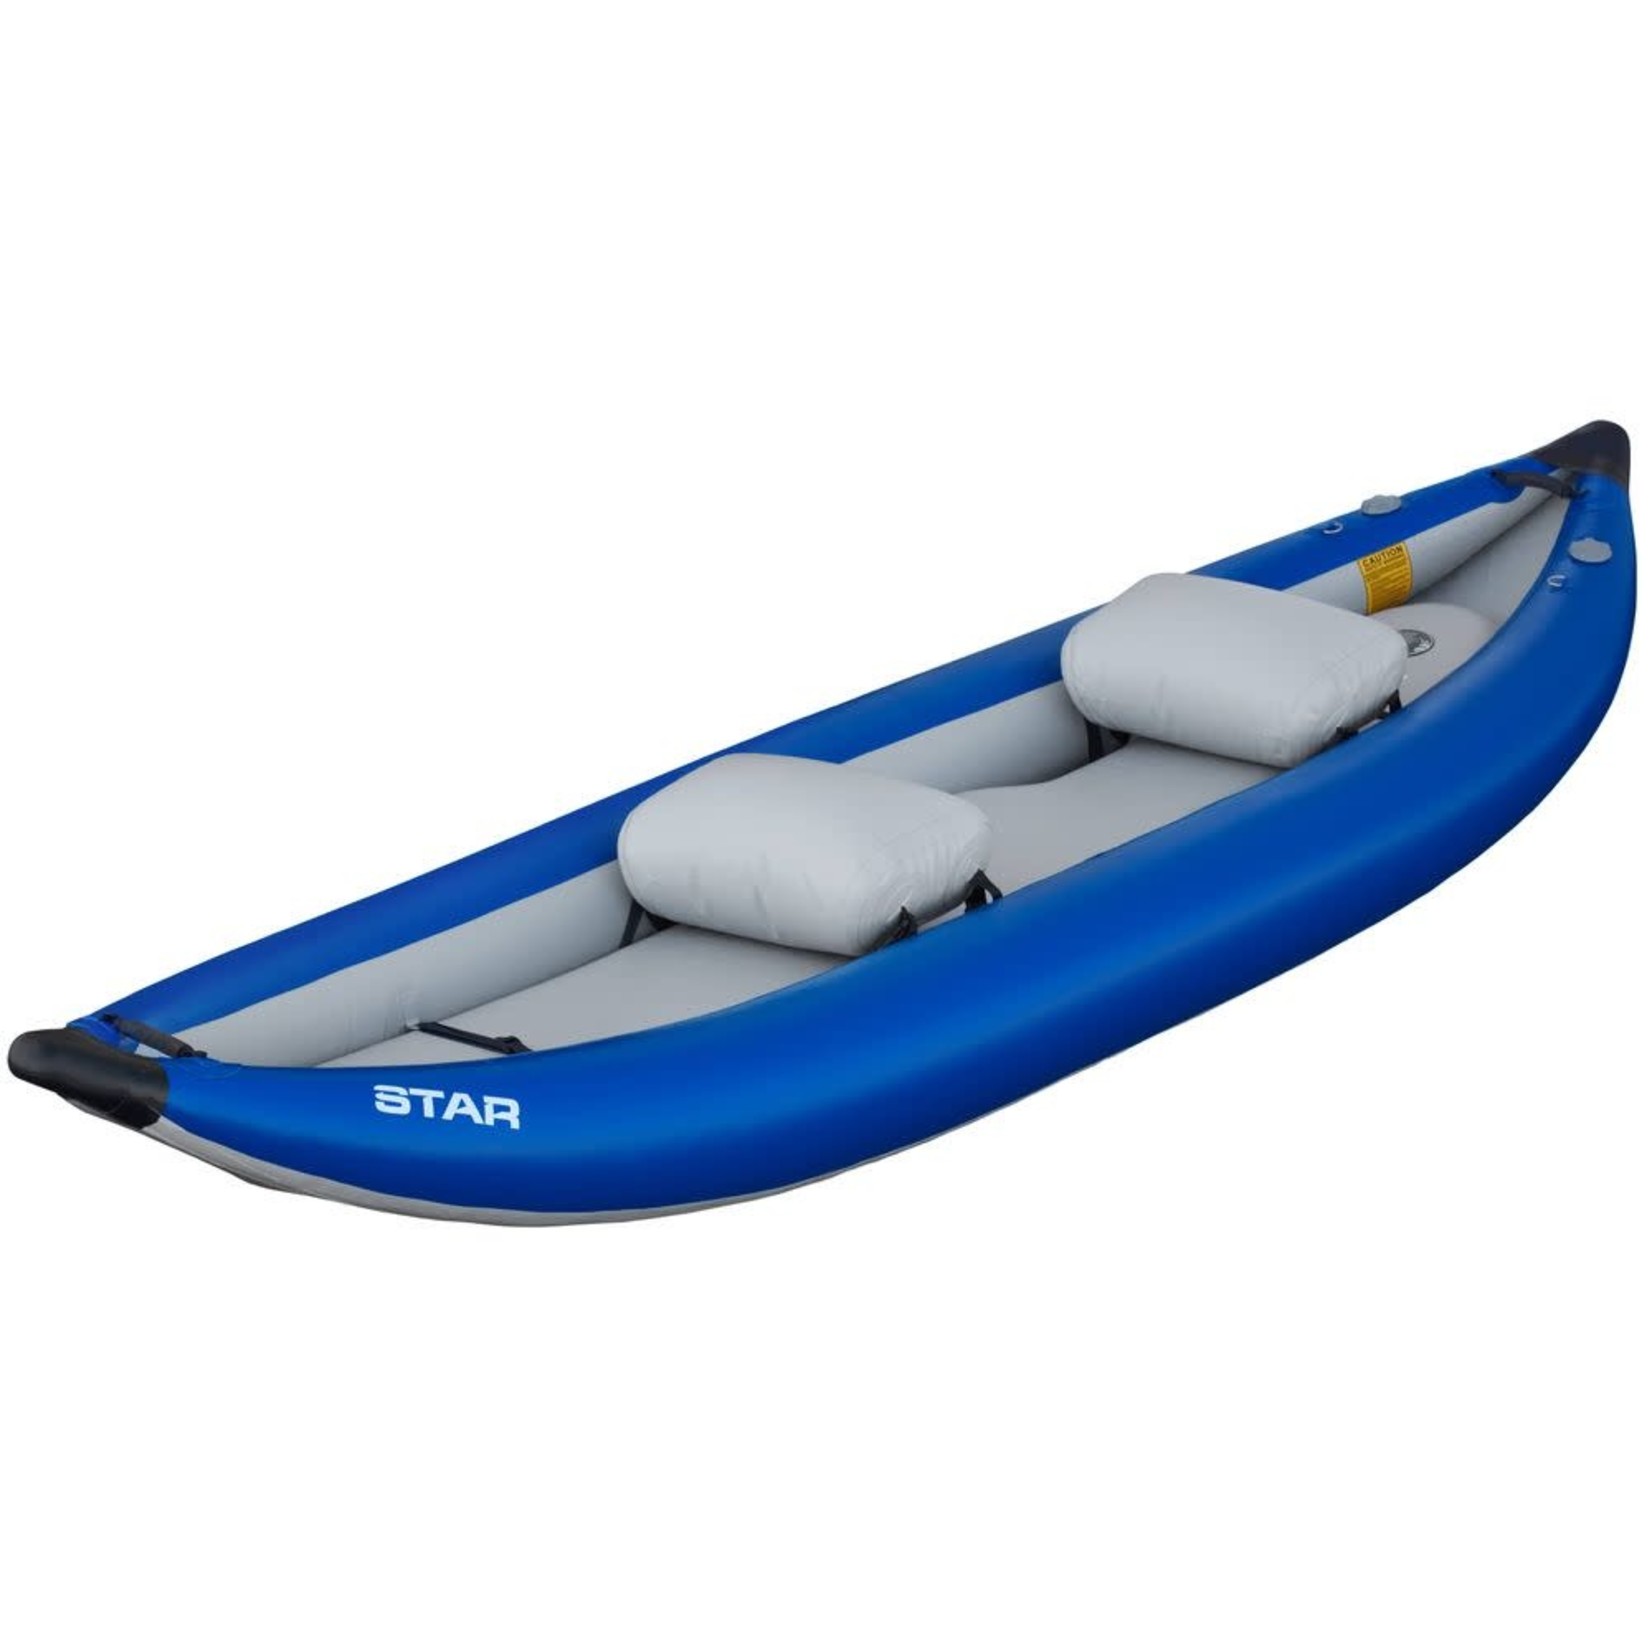 STAR STAR Outlaw II Inflatable Kayak